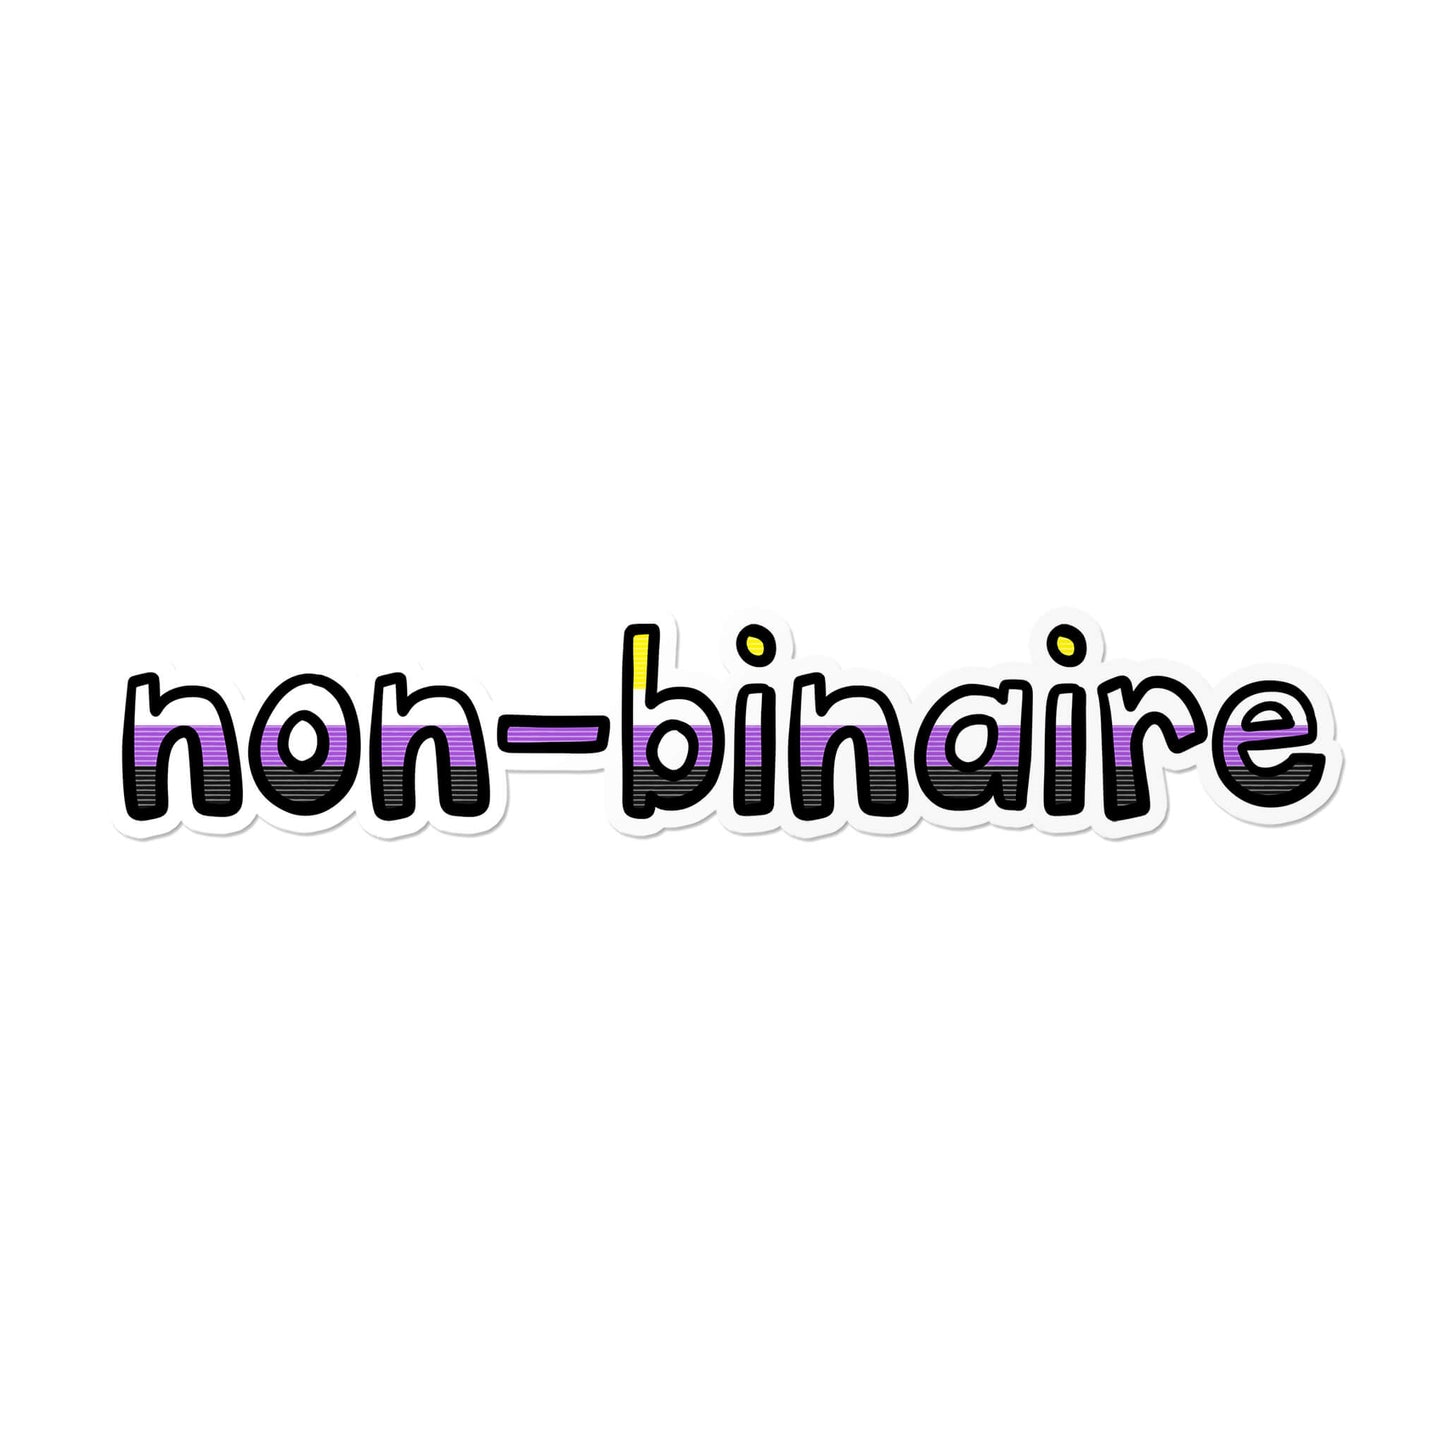 Non-binaire Sticker